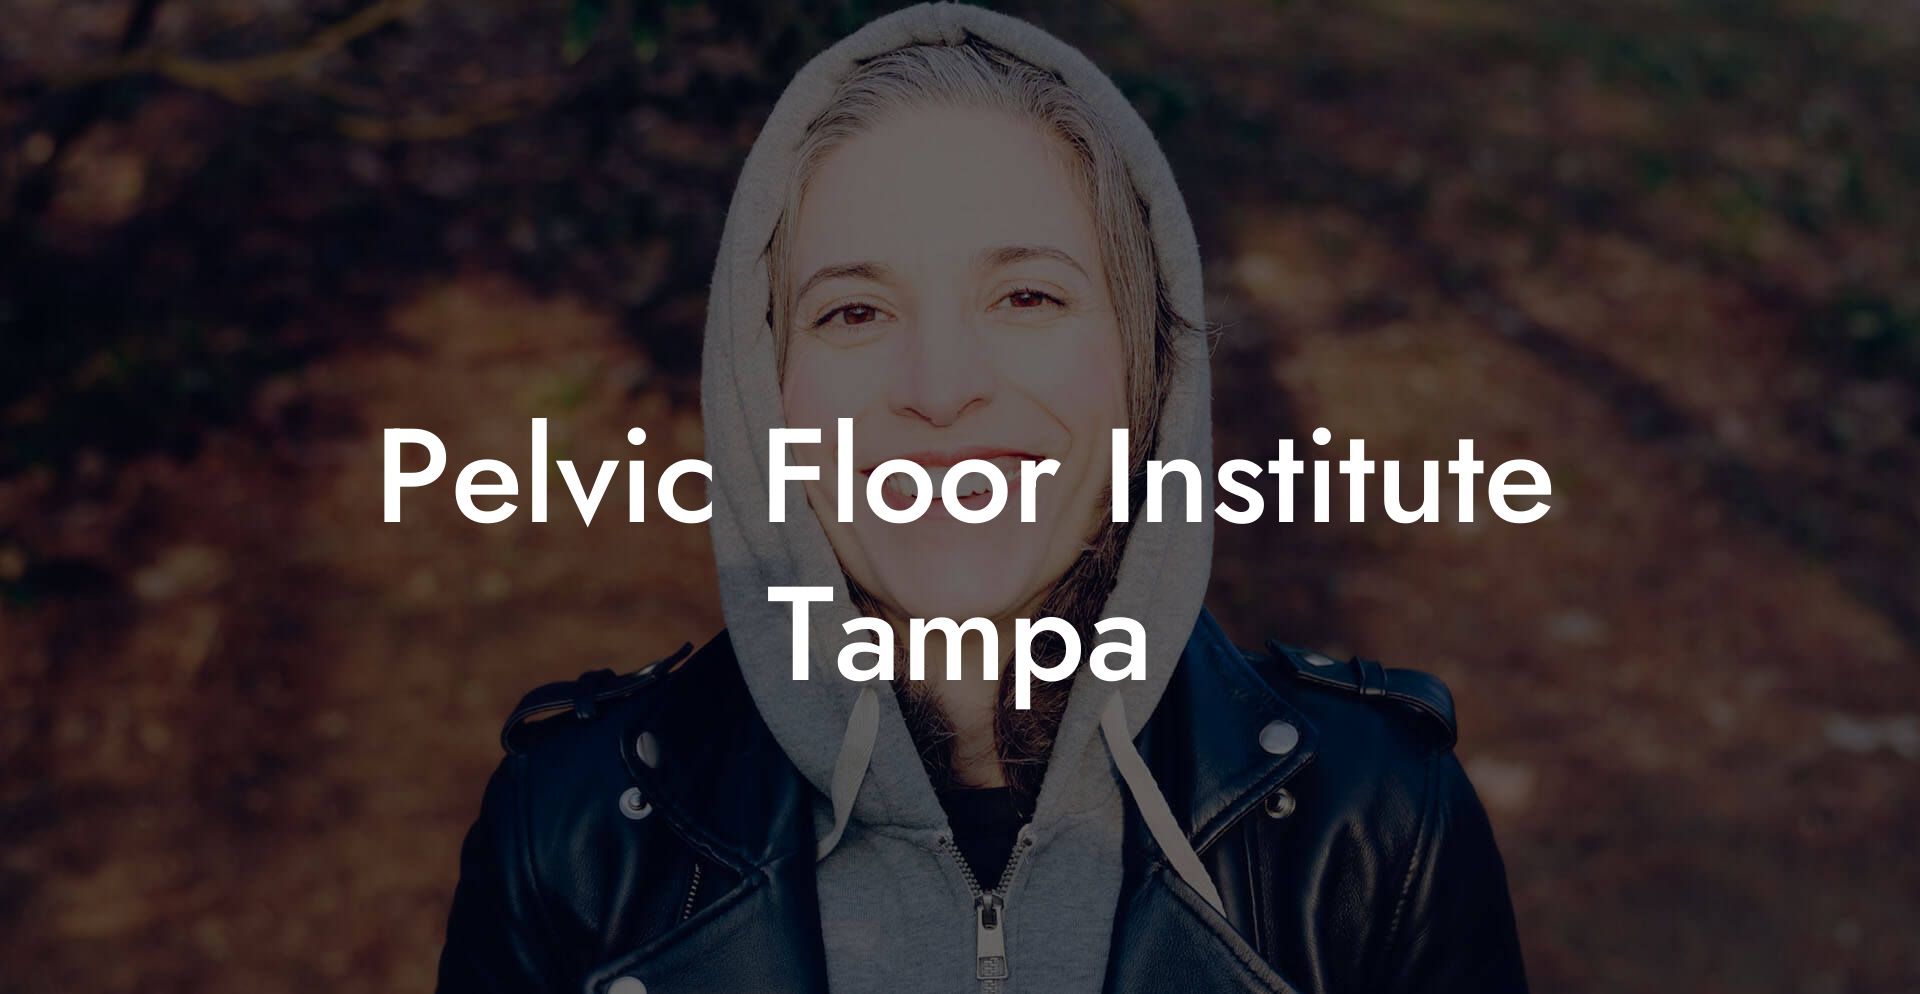 Pelvic Floor Institute Tampa